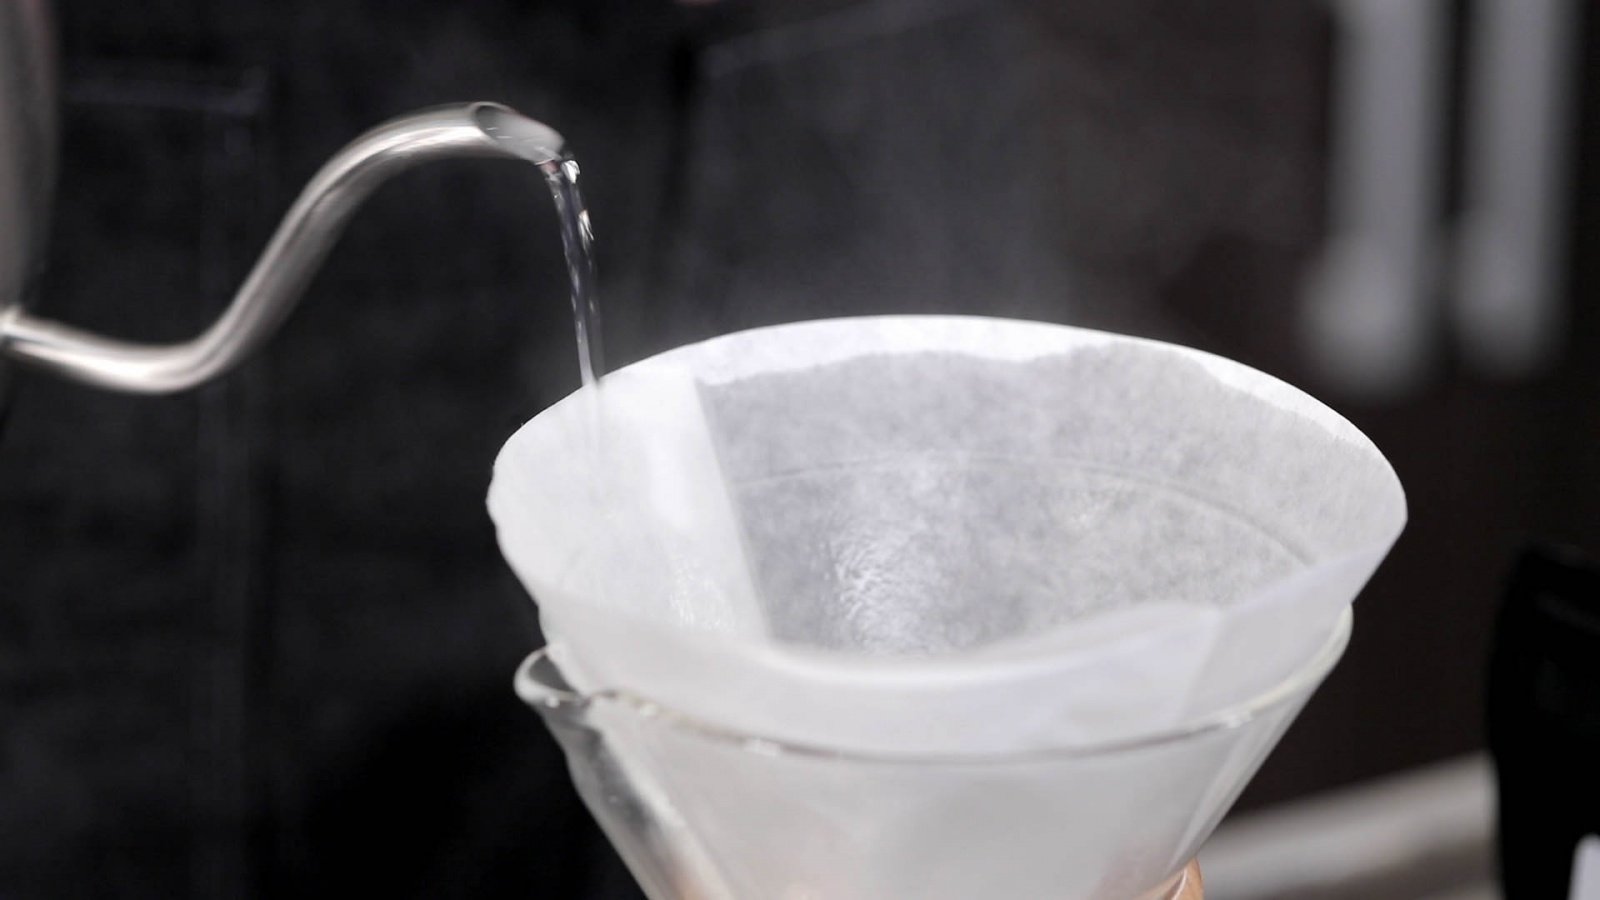 Приготовление кофе в кемексе. Шаг 5 − Обильно смочите фильтр горячей водой. Слейте воду через носик, не вынимая фильтр;